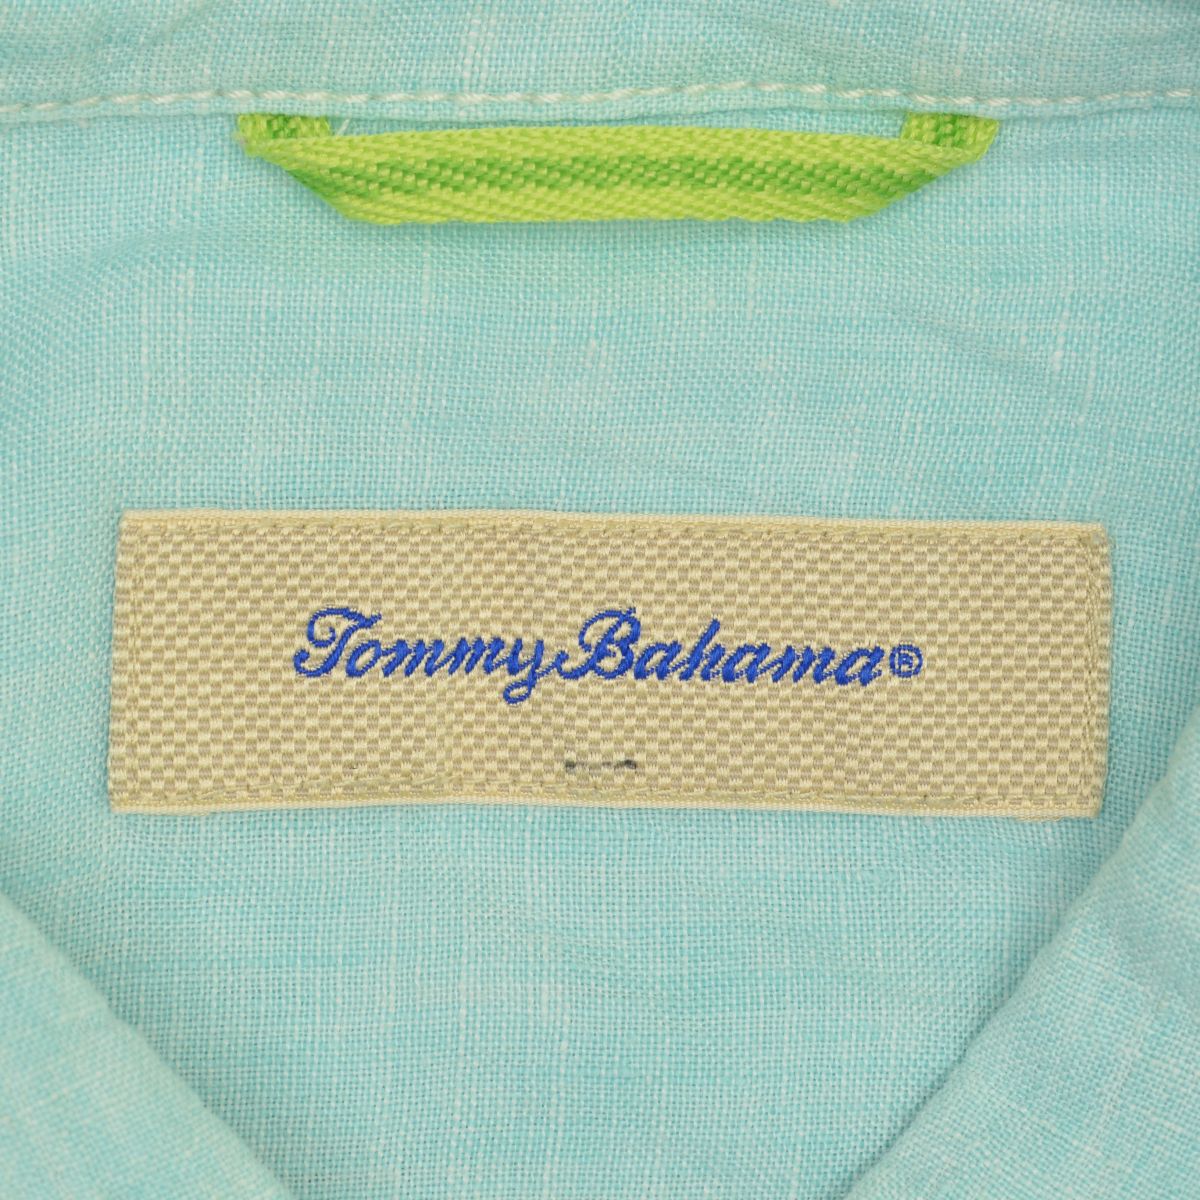 【ブランド古着】TommyBahama / トミーバハマ TB317967 リネン 長袖シャツ | 長袖 ブランド古着の買取販売カンフル